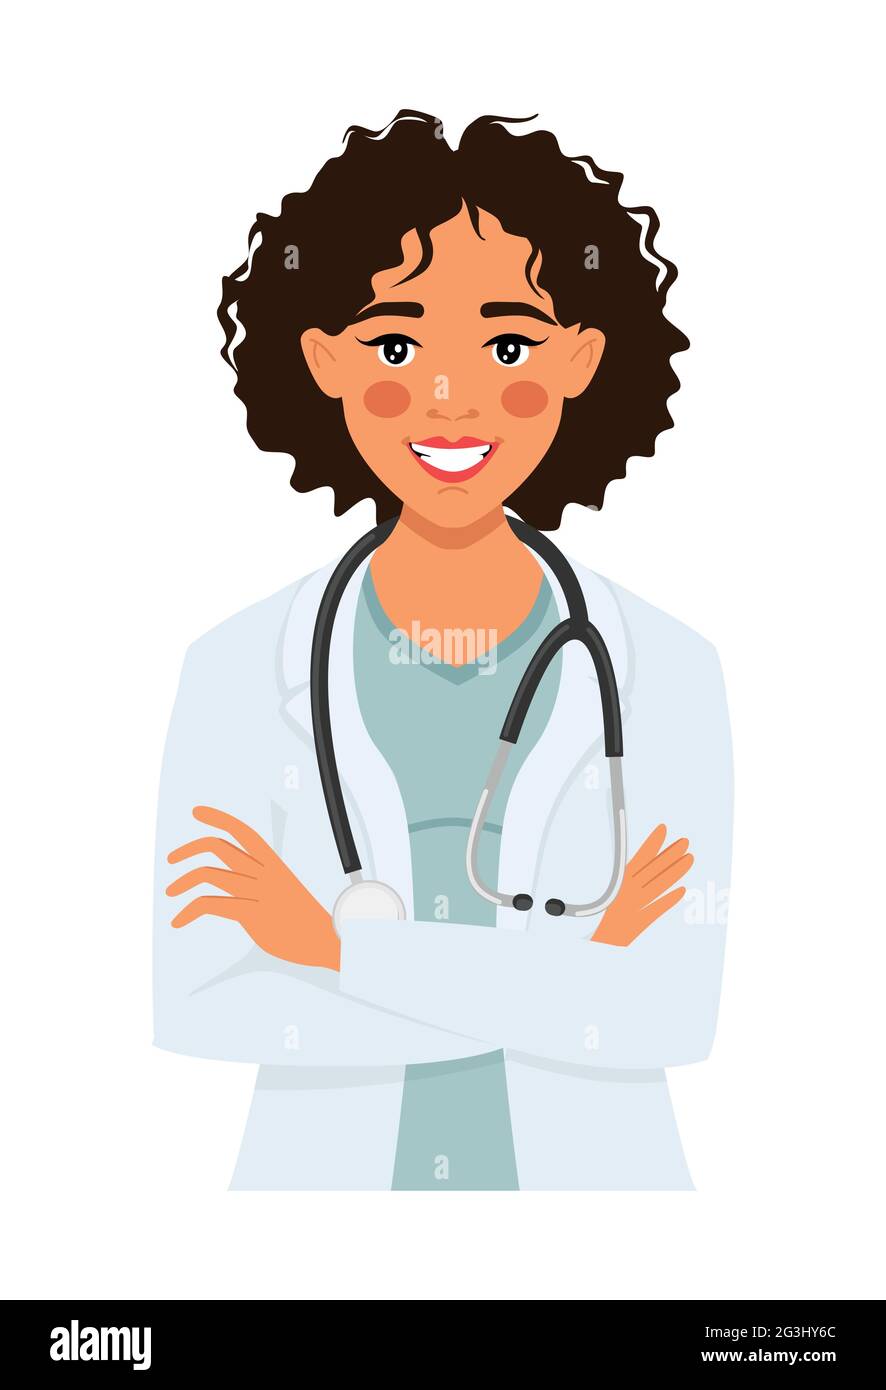 Docteure », « doctoresse » un sondage sur le féminin de « docteur »  anime la Toile